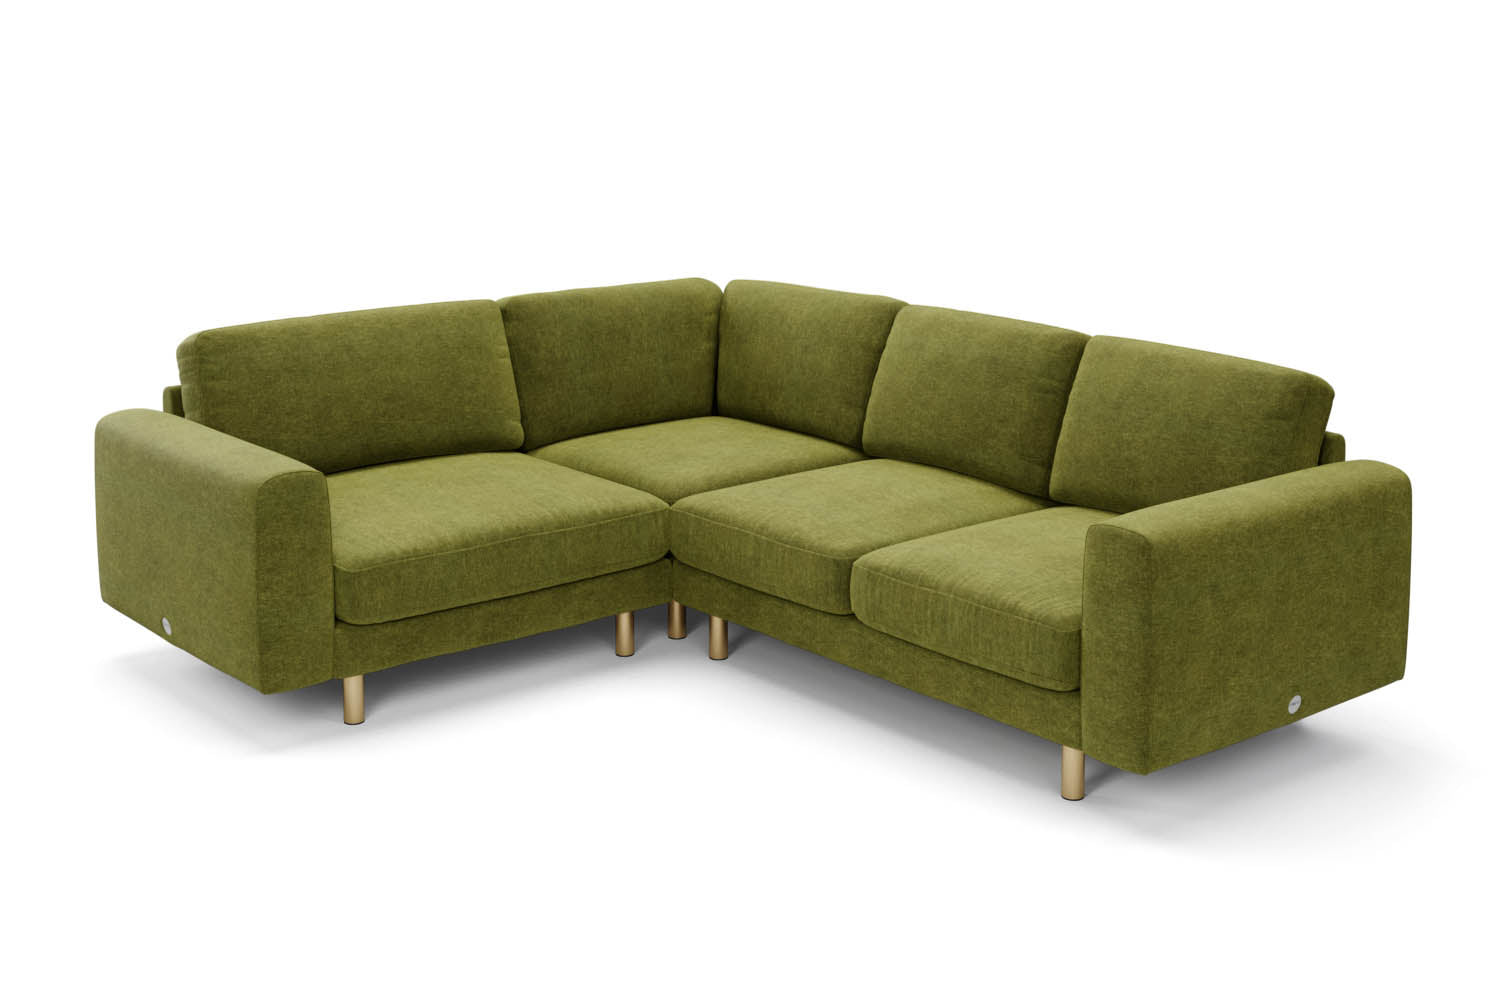 The Big Chill - Small Corner Sofa - Moss